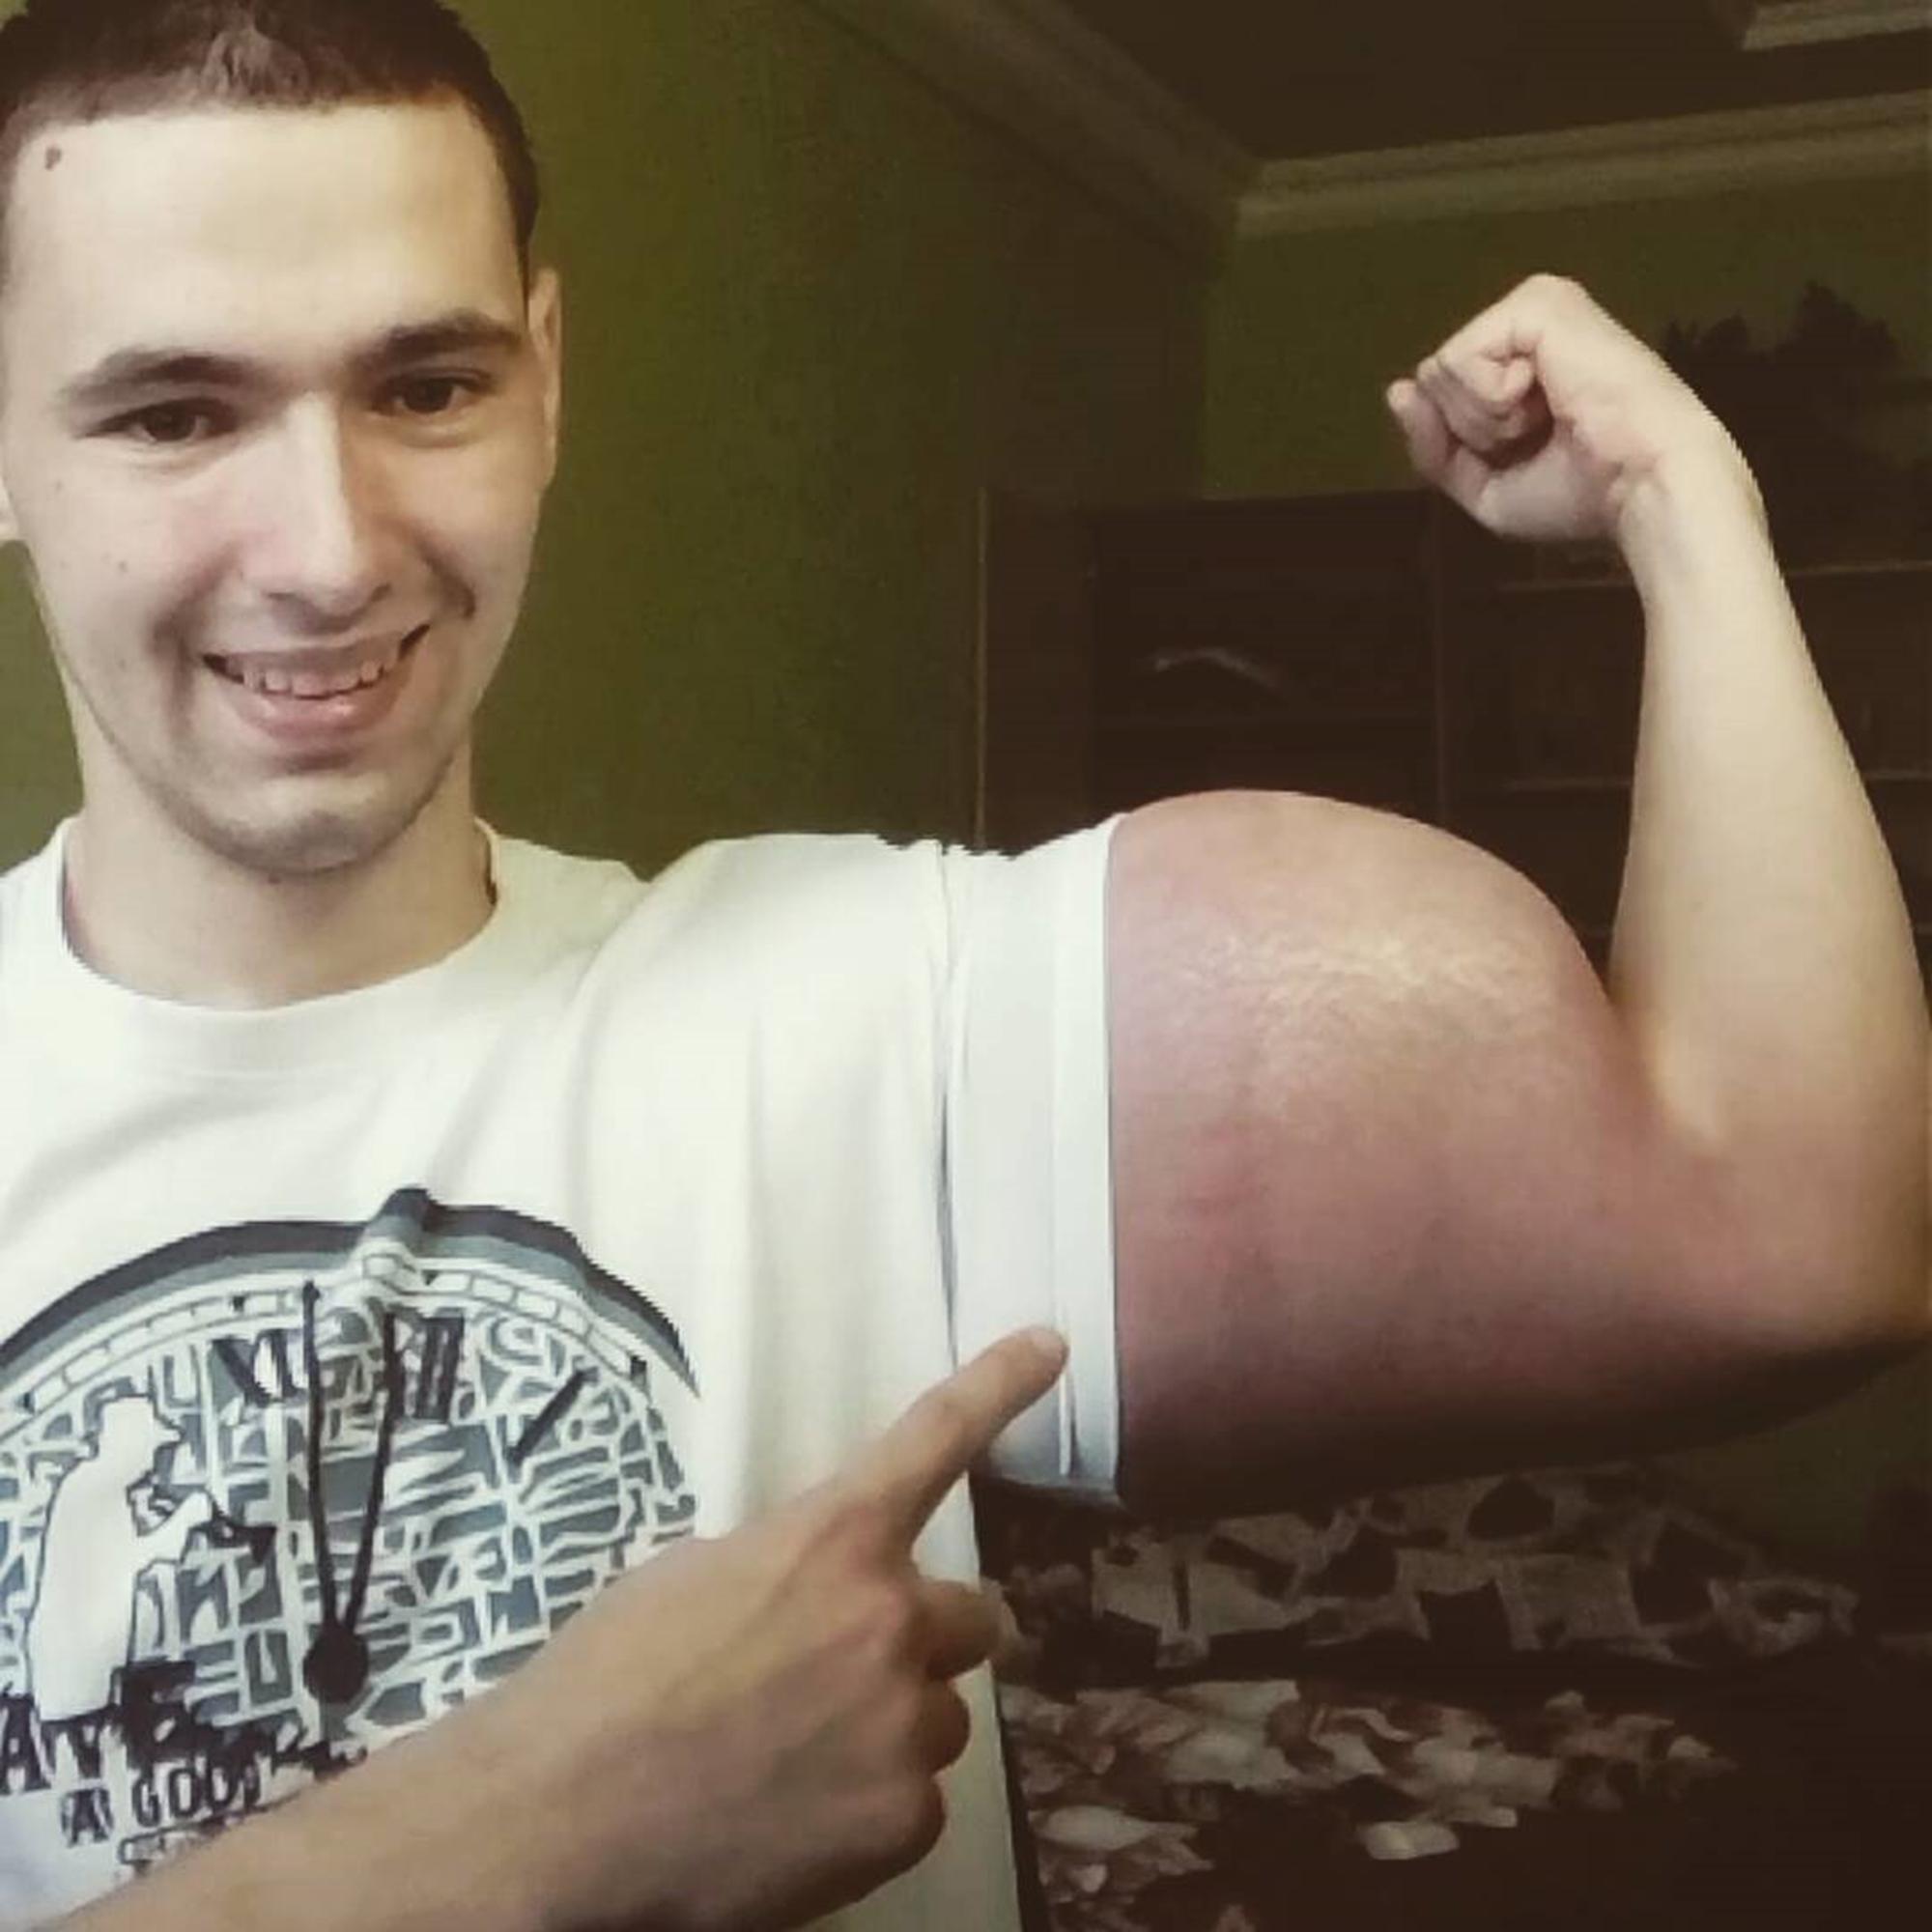 Кирилл Терешин, 21 год, из Пятигорска, расположенного на юго-западе Ставропольского края, делится фотографиями своего странного телосложения в социальных сетях